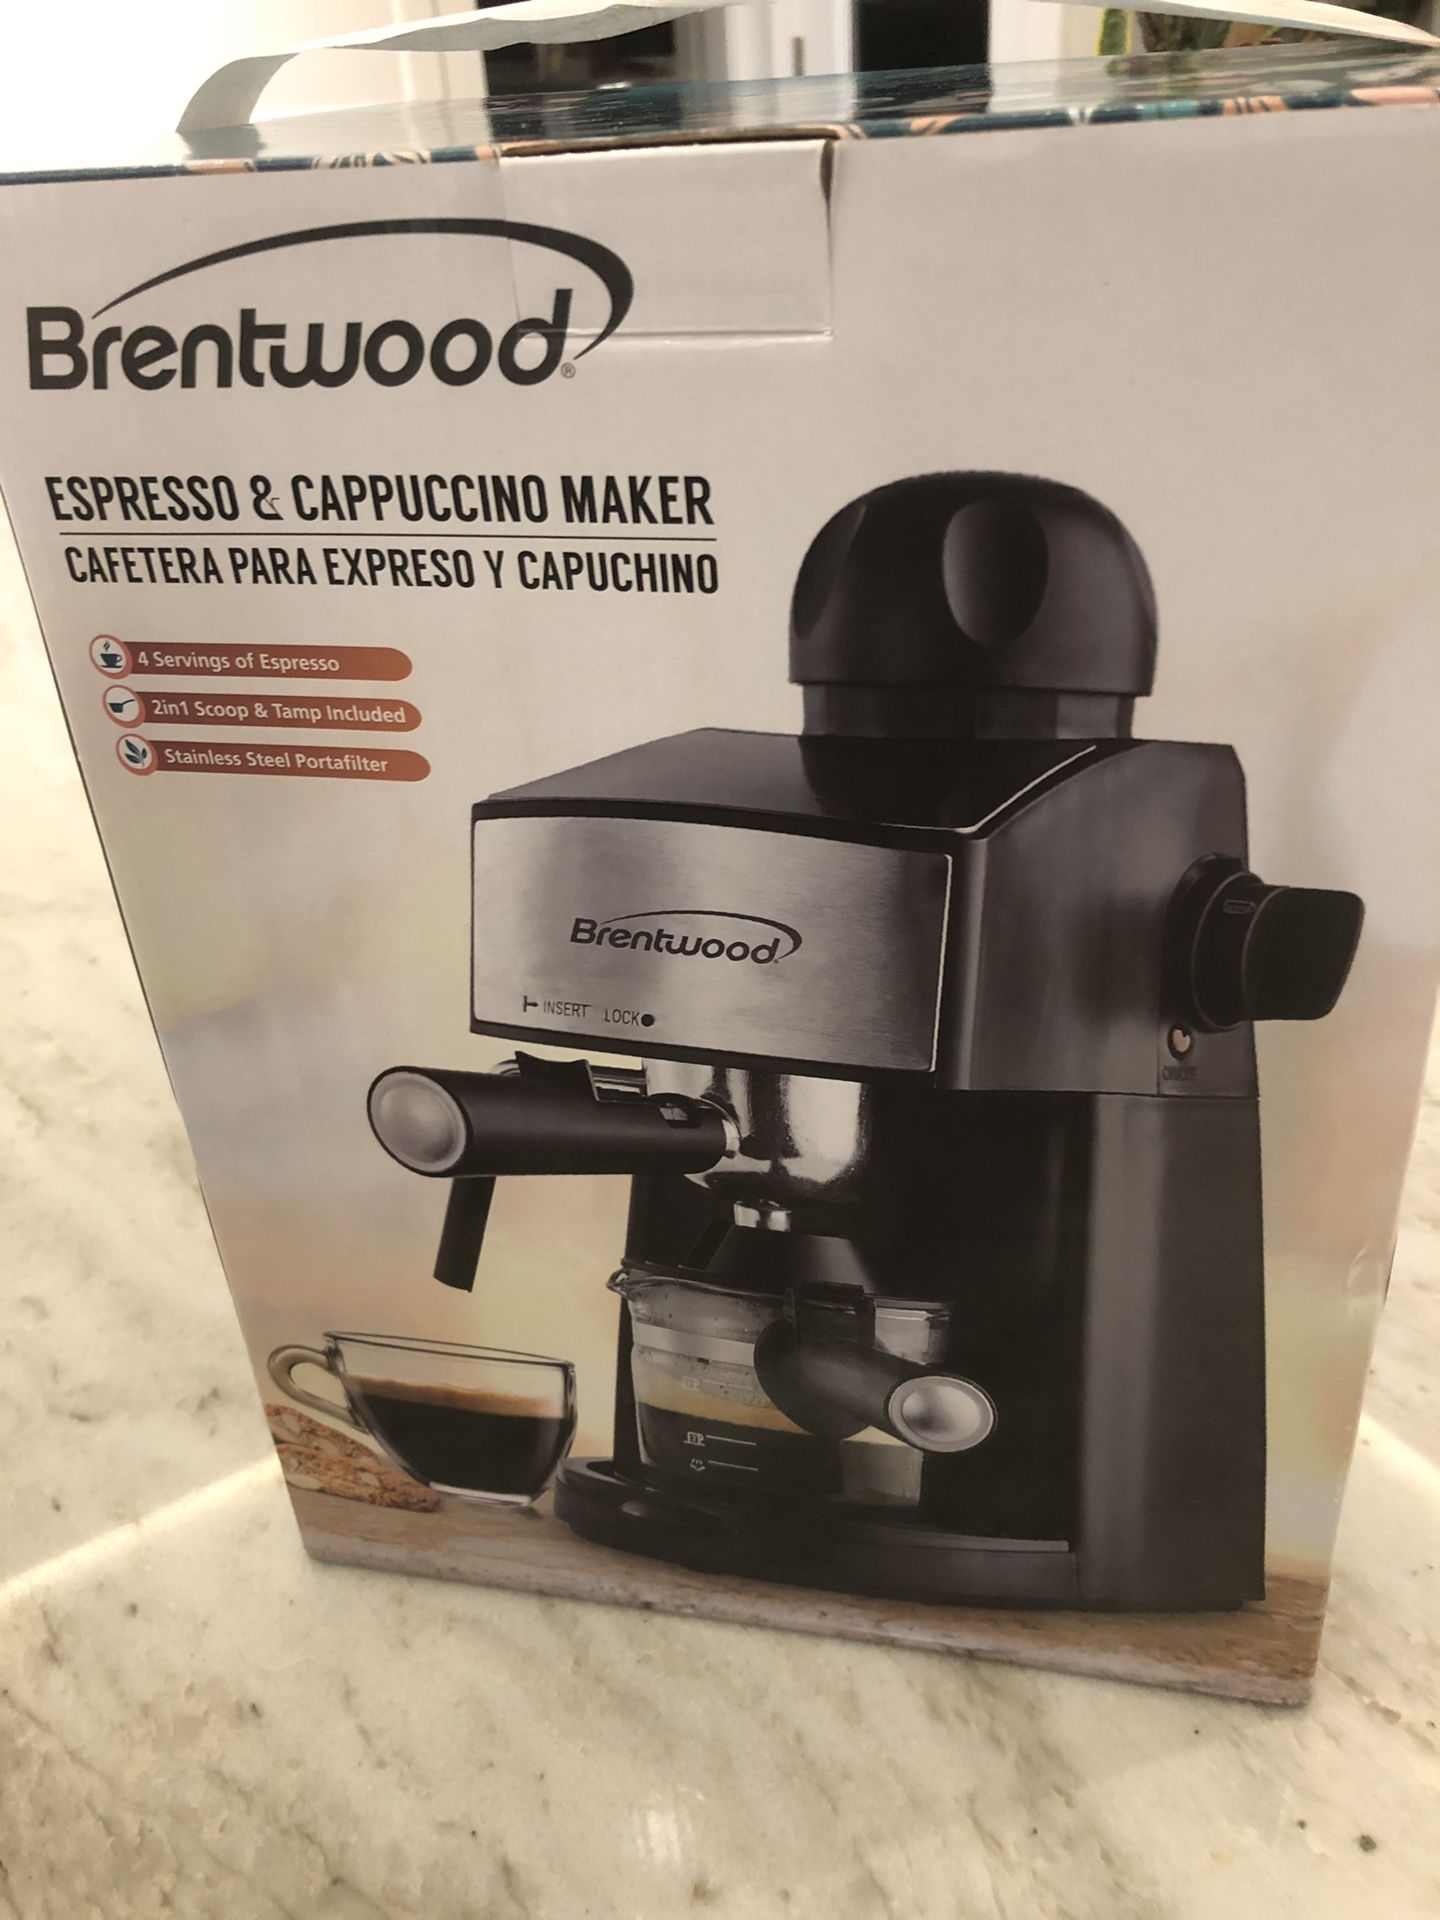 Brand new espesso & cappuccino maker